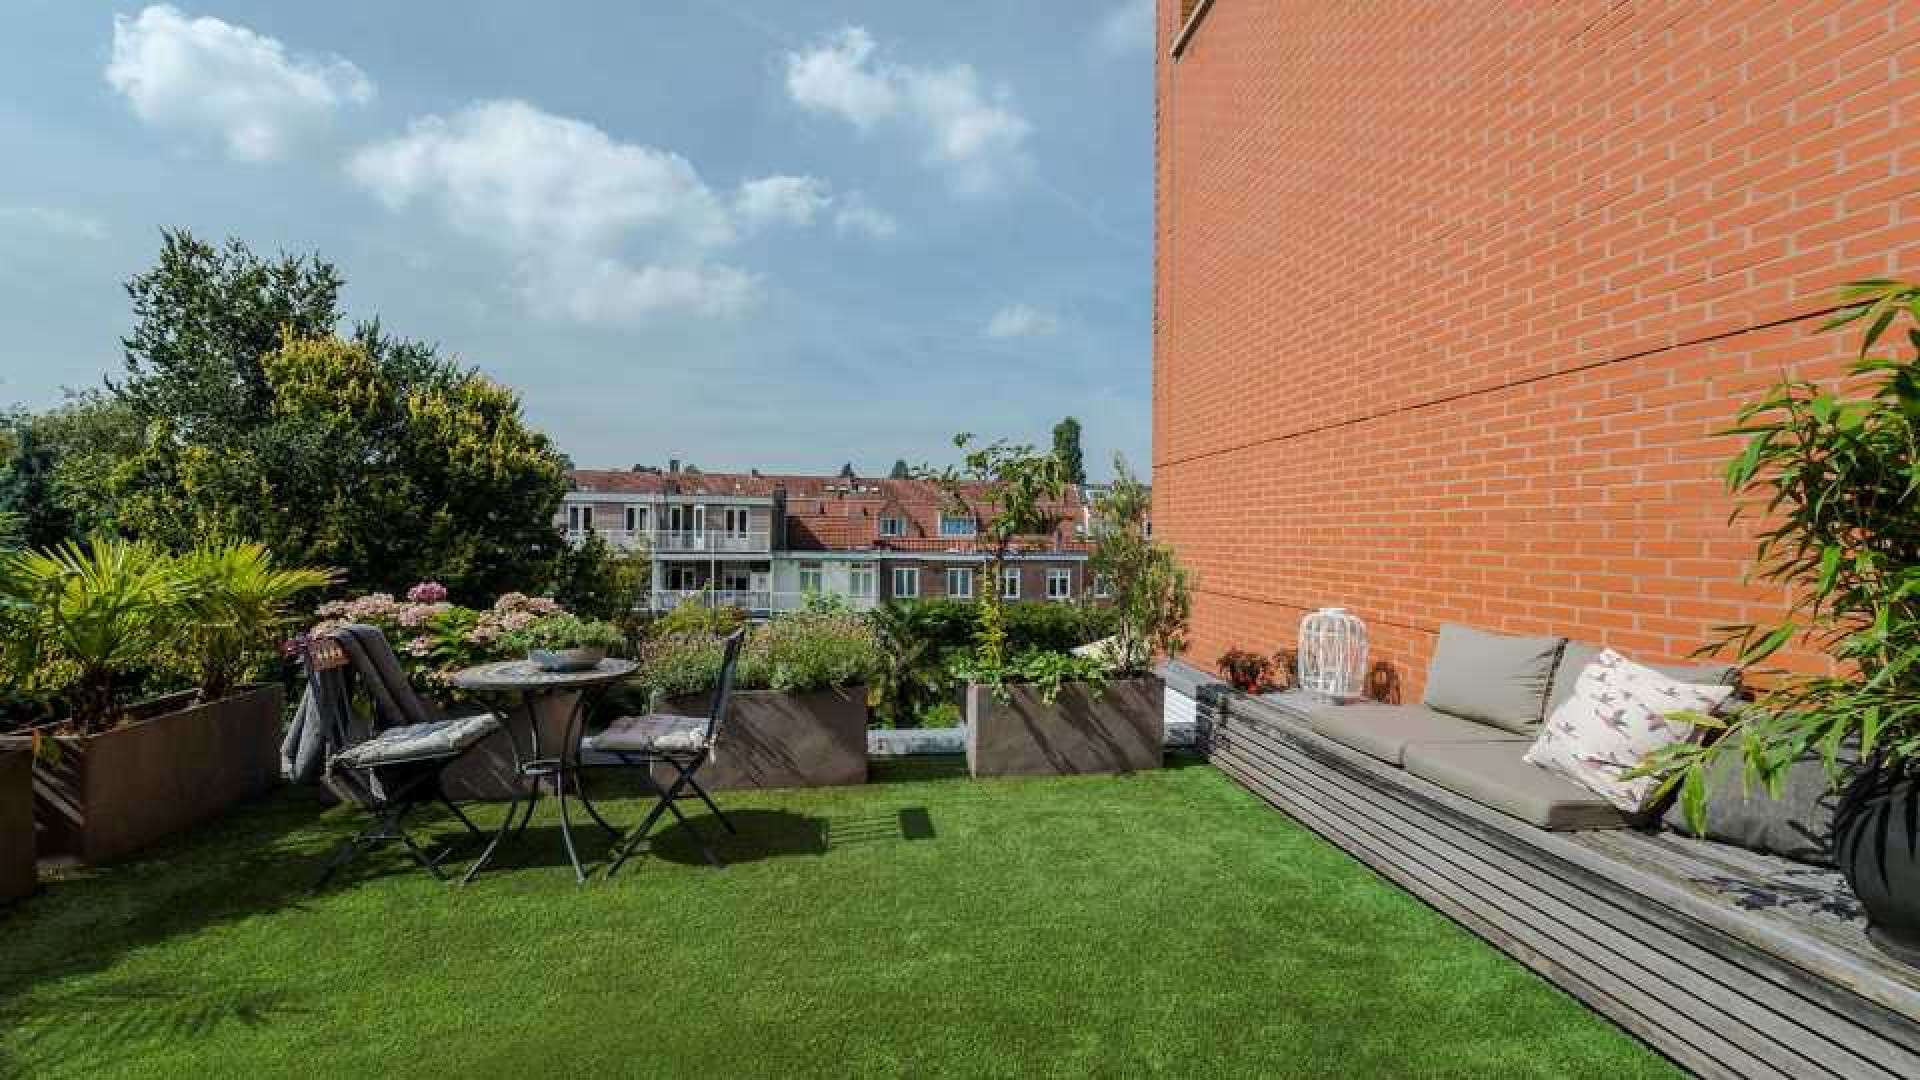 Ex Jiskefet acteur Kees Prins zet zijn miljoenenhuis in Amsterdam Oud Zuid te koop. Zie foto's